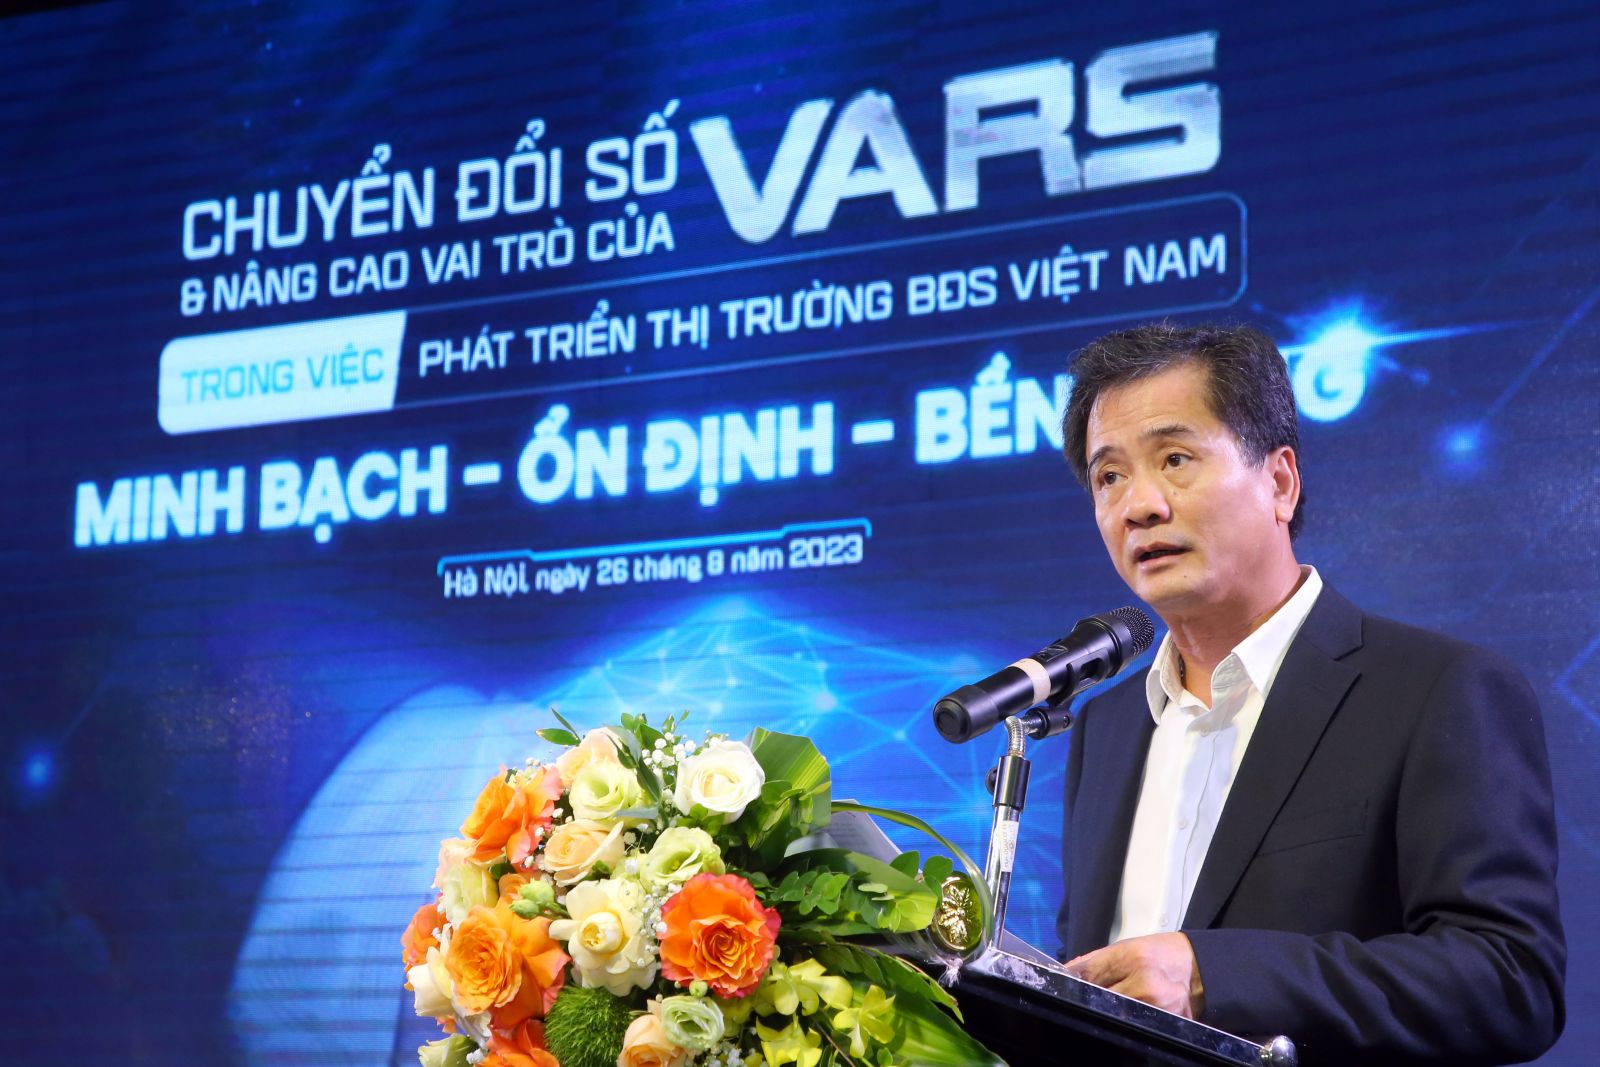 Hội nghị “Chuyển đổi số - Nâng cao vai trò của VARS trong việc phát triển thị trường BĐS Việt Nam minh bạch, ổn định và bền vững”- Ảnh 7.